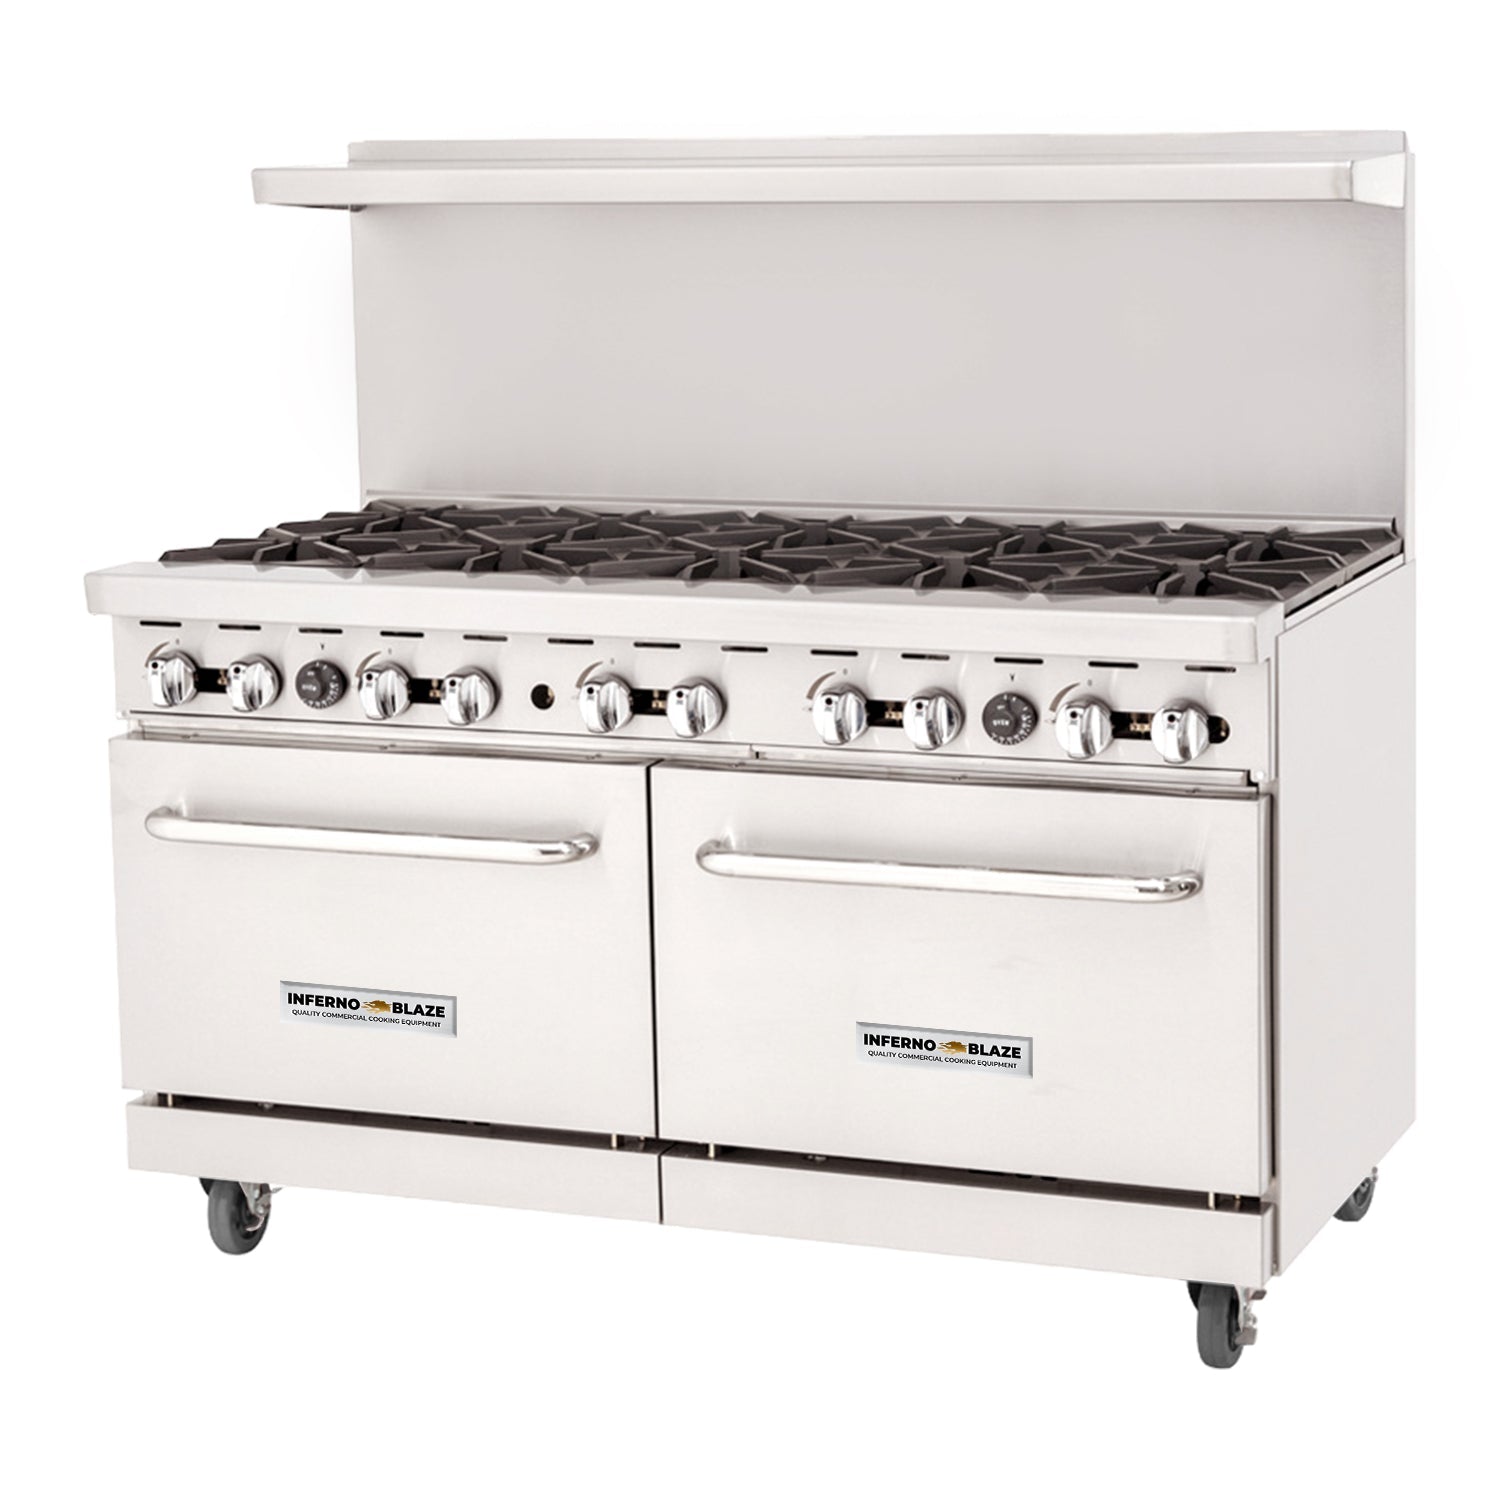 Inferno Blaze Premium IBP-GR-60/LP 60" Liquid Propane 10 Burner Range with 2 Standard Ovens - 285,000 BTU - Kitchen Pro Restaurant Equipment